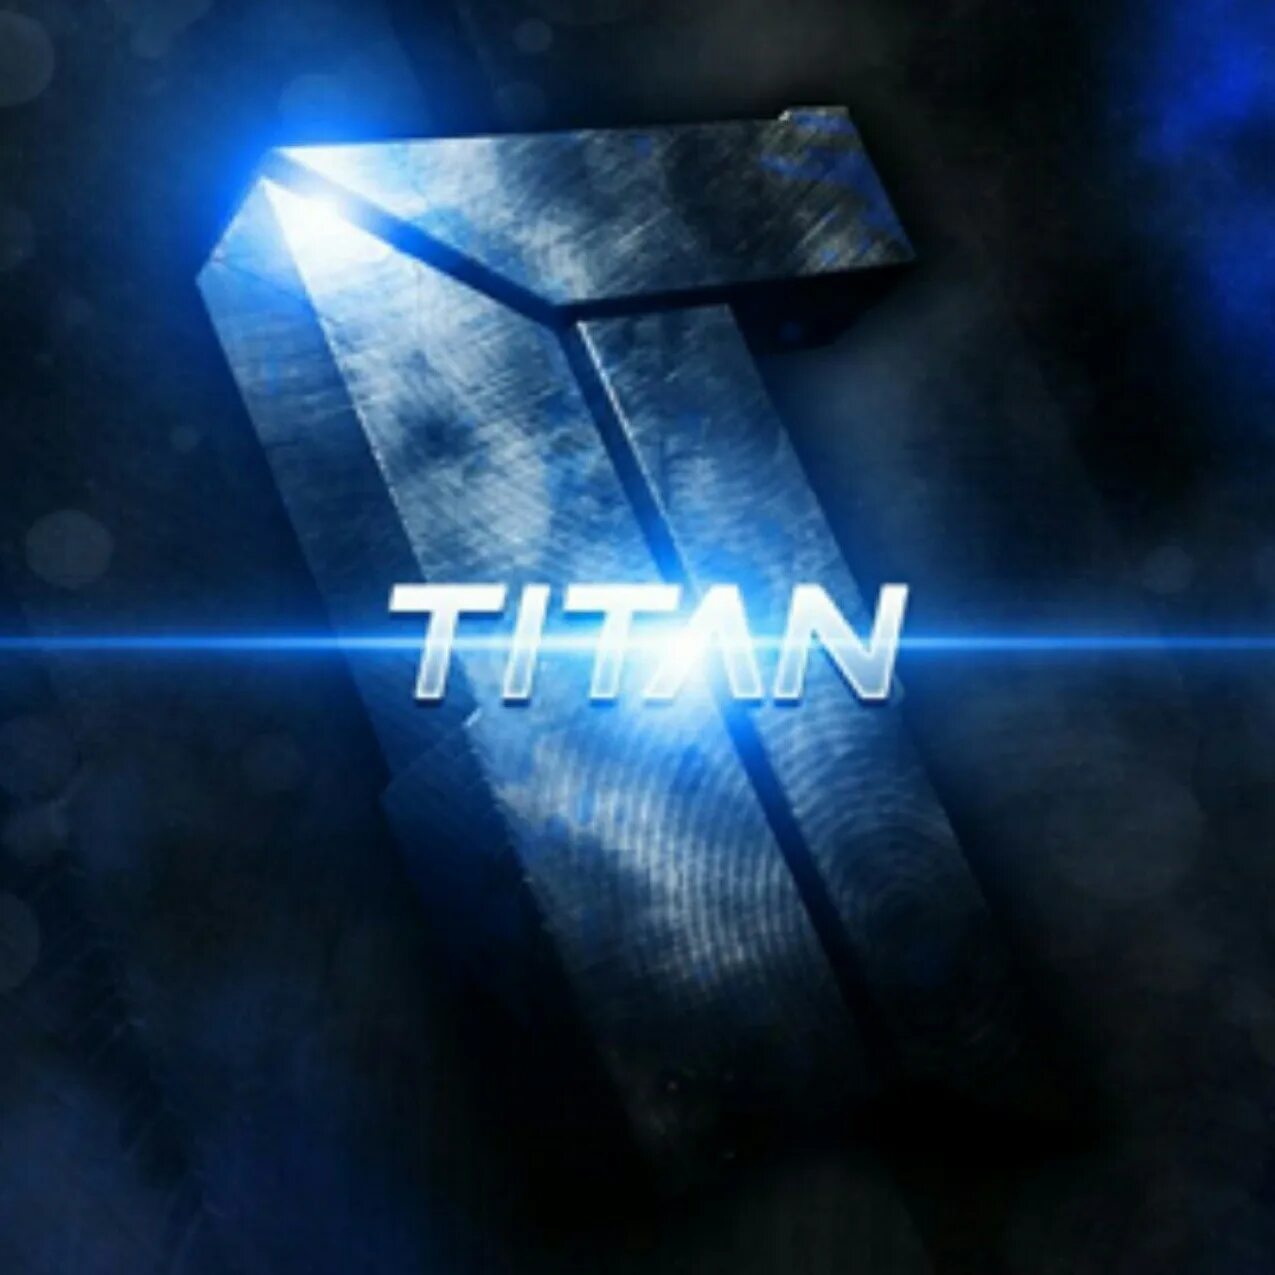 Аватарка тв. Titan аватарка. Титан команда. Титан КС. Команда Титан КС го.